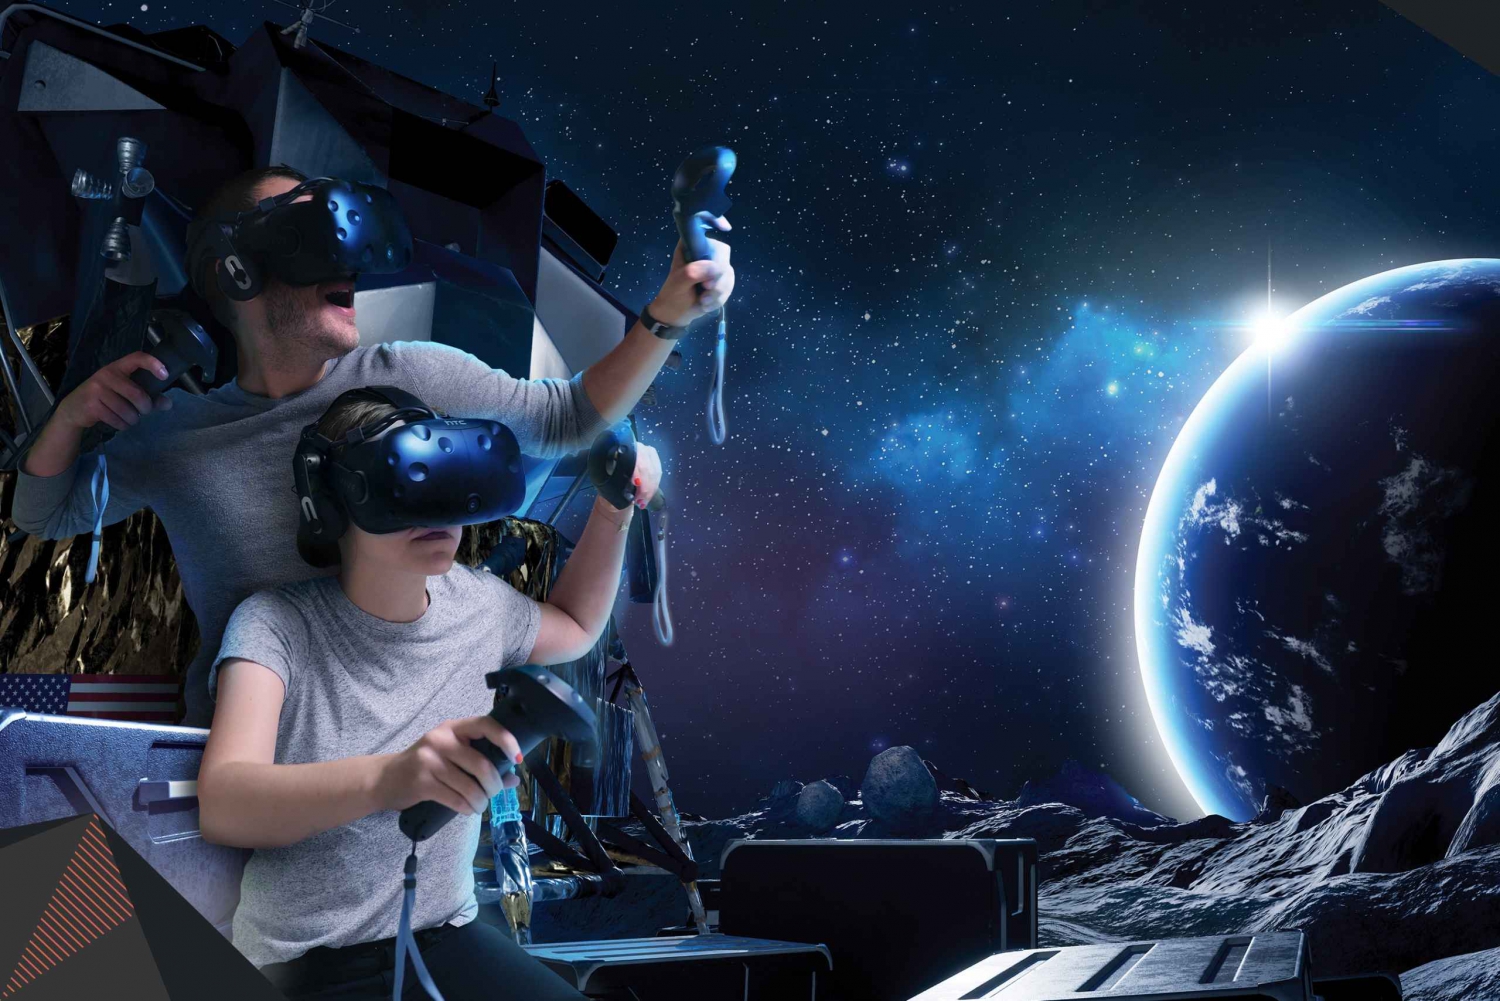 Sydney : Expérience de réalité virtuelle de 45 minutes pour 2-4 joueurs